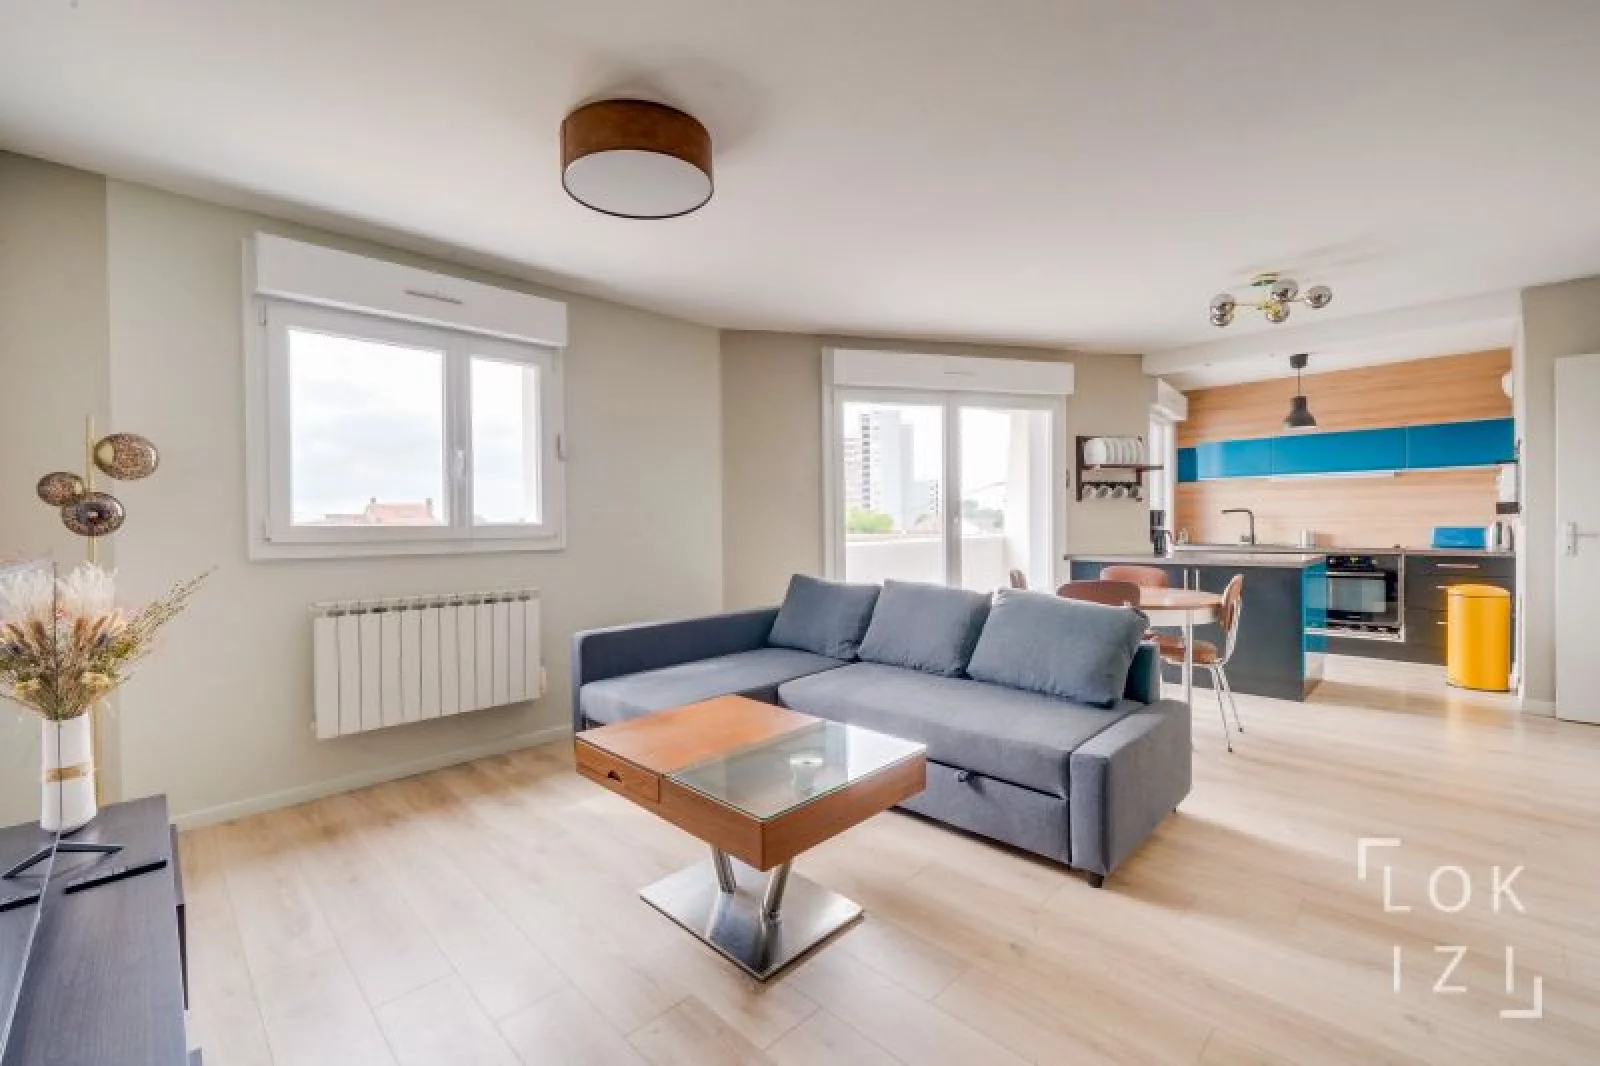 Location appartement meublé 3 pièces 61m² (Bordeaux - Barrière de Toulouse)